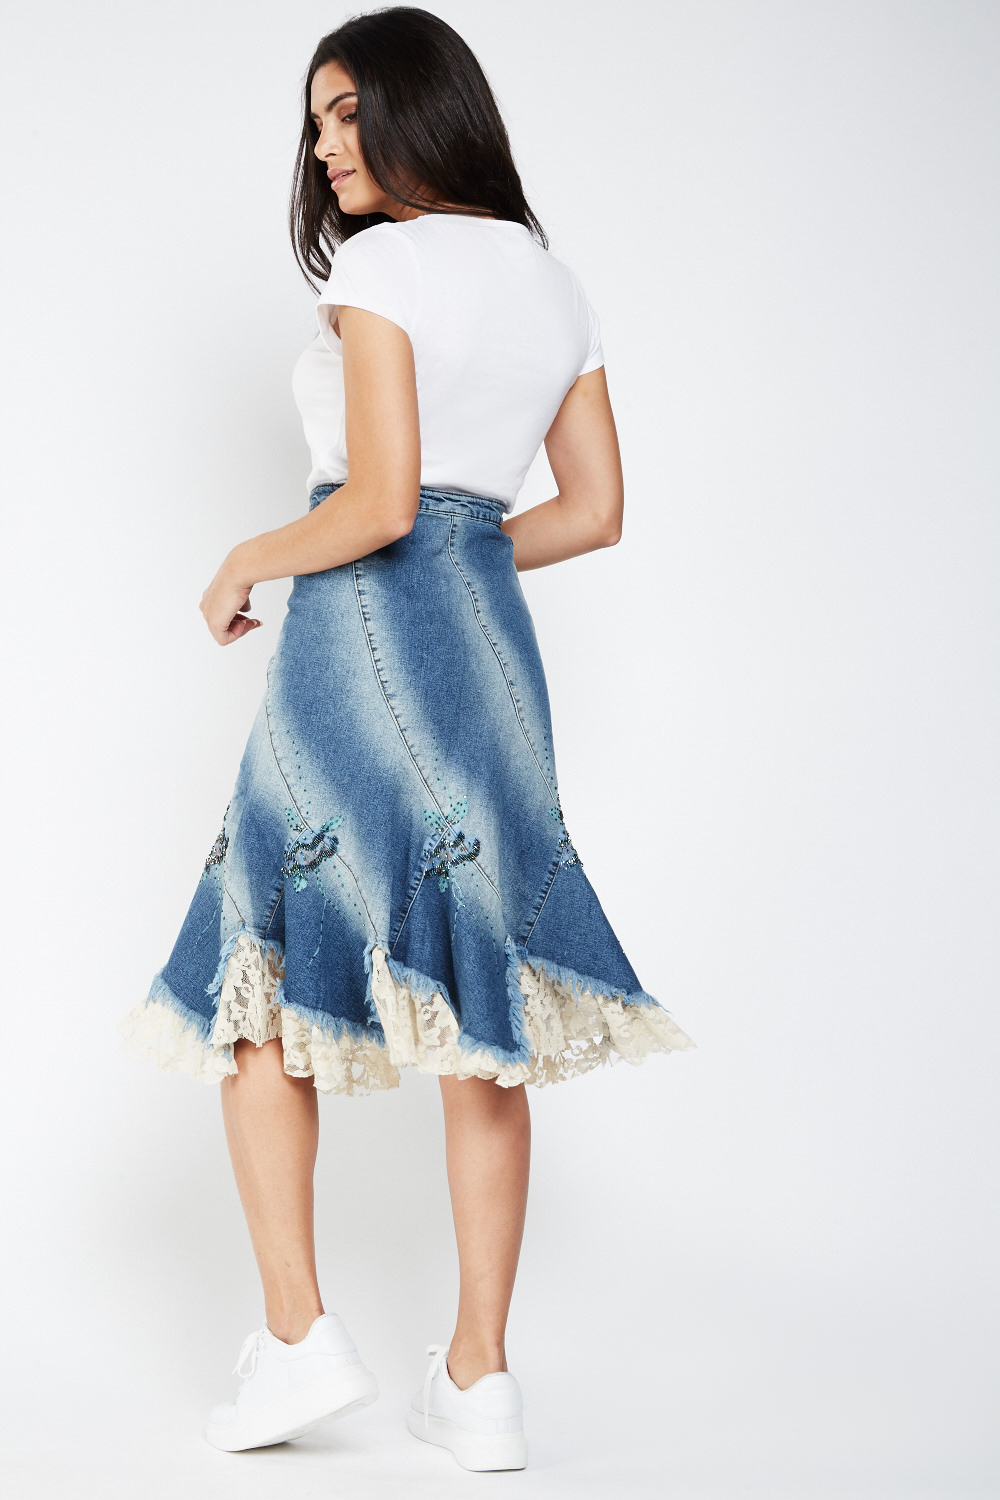 Embellished Lace Trim Flared Denim Skirt - Just $7